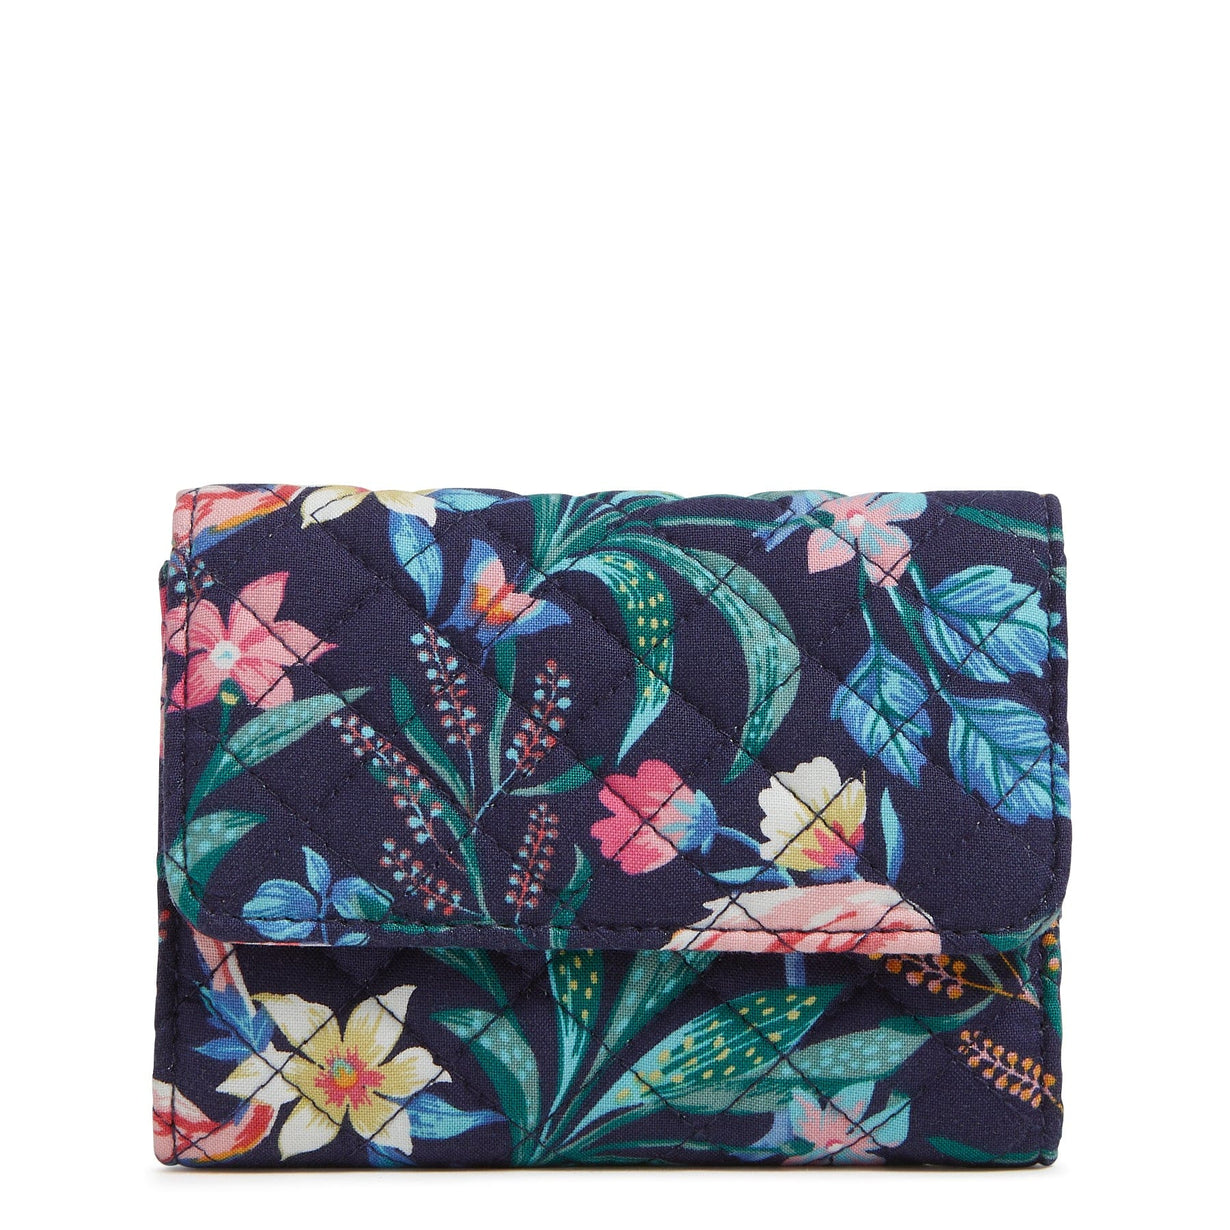 RFID Riley Compact Wallet : Flamingo Garden - Vera Bradley - Image 1